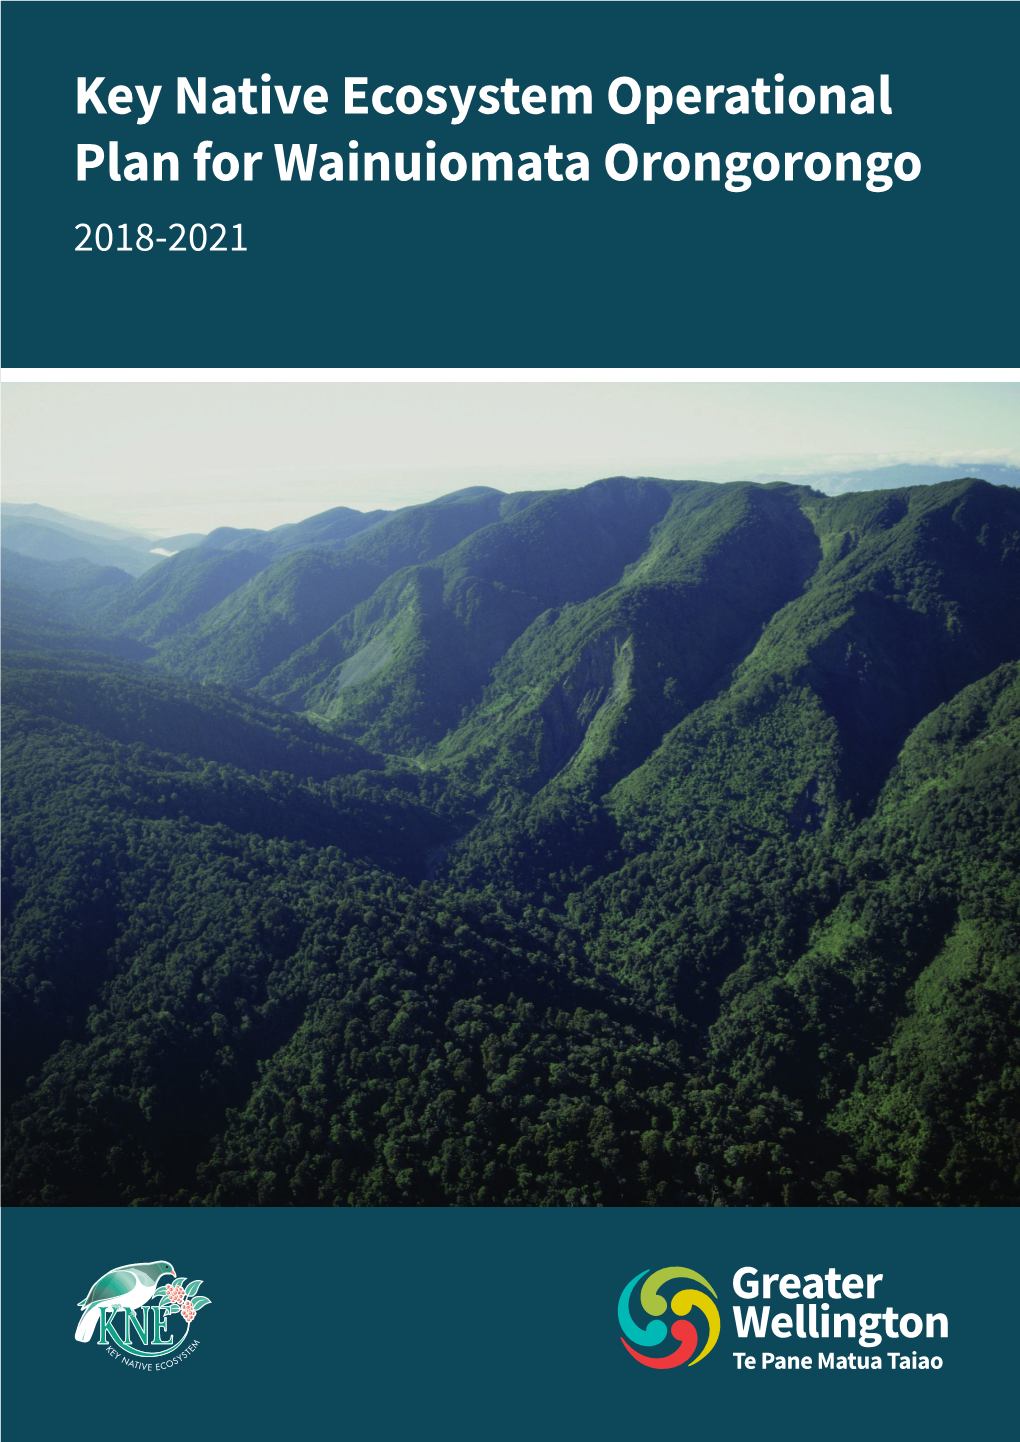 Key Native Ecosystem Operational Plan for Wainuiomata Orongorongo 2018-2021